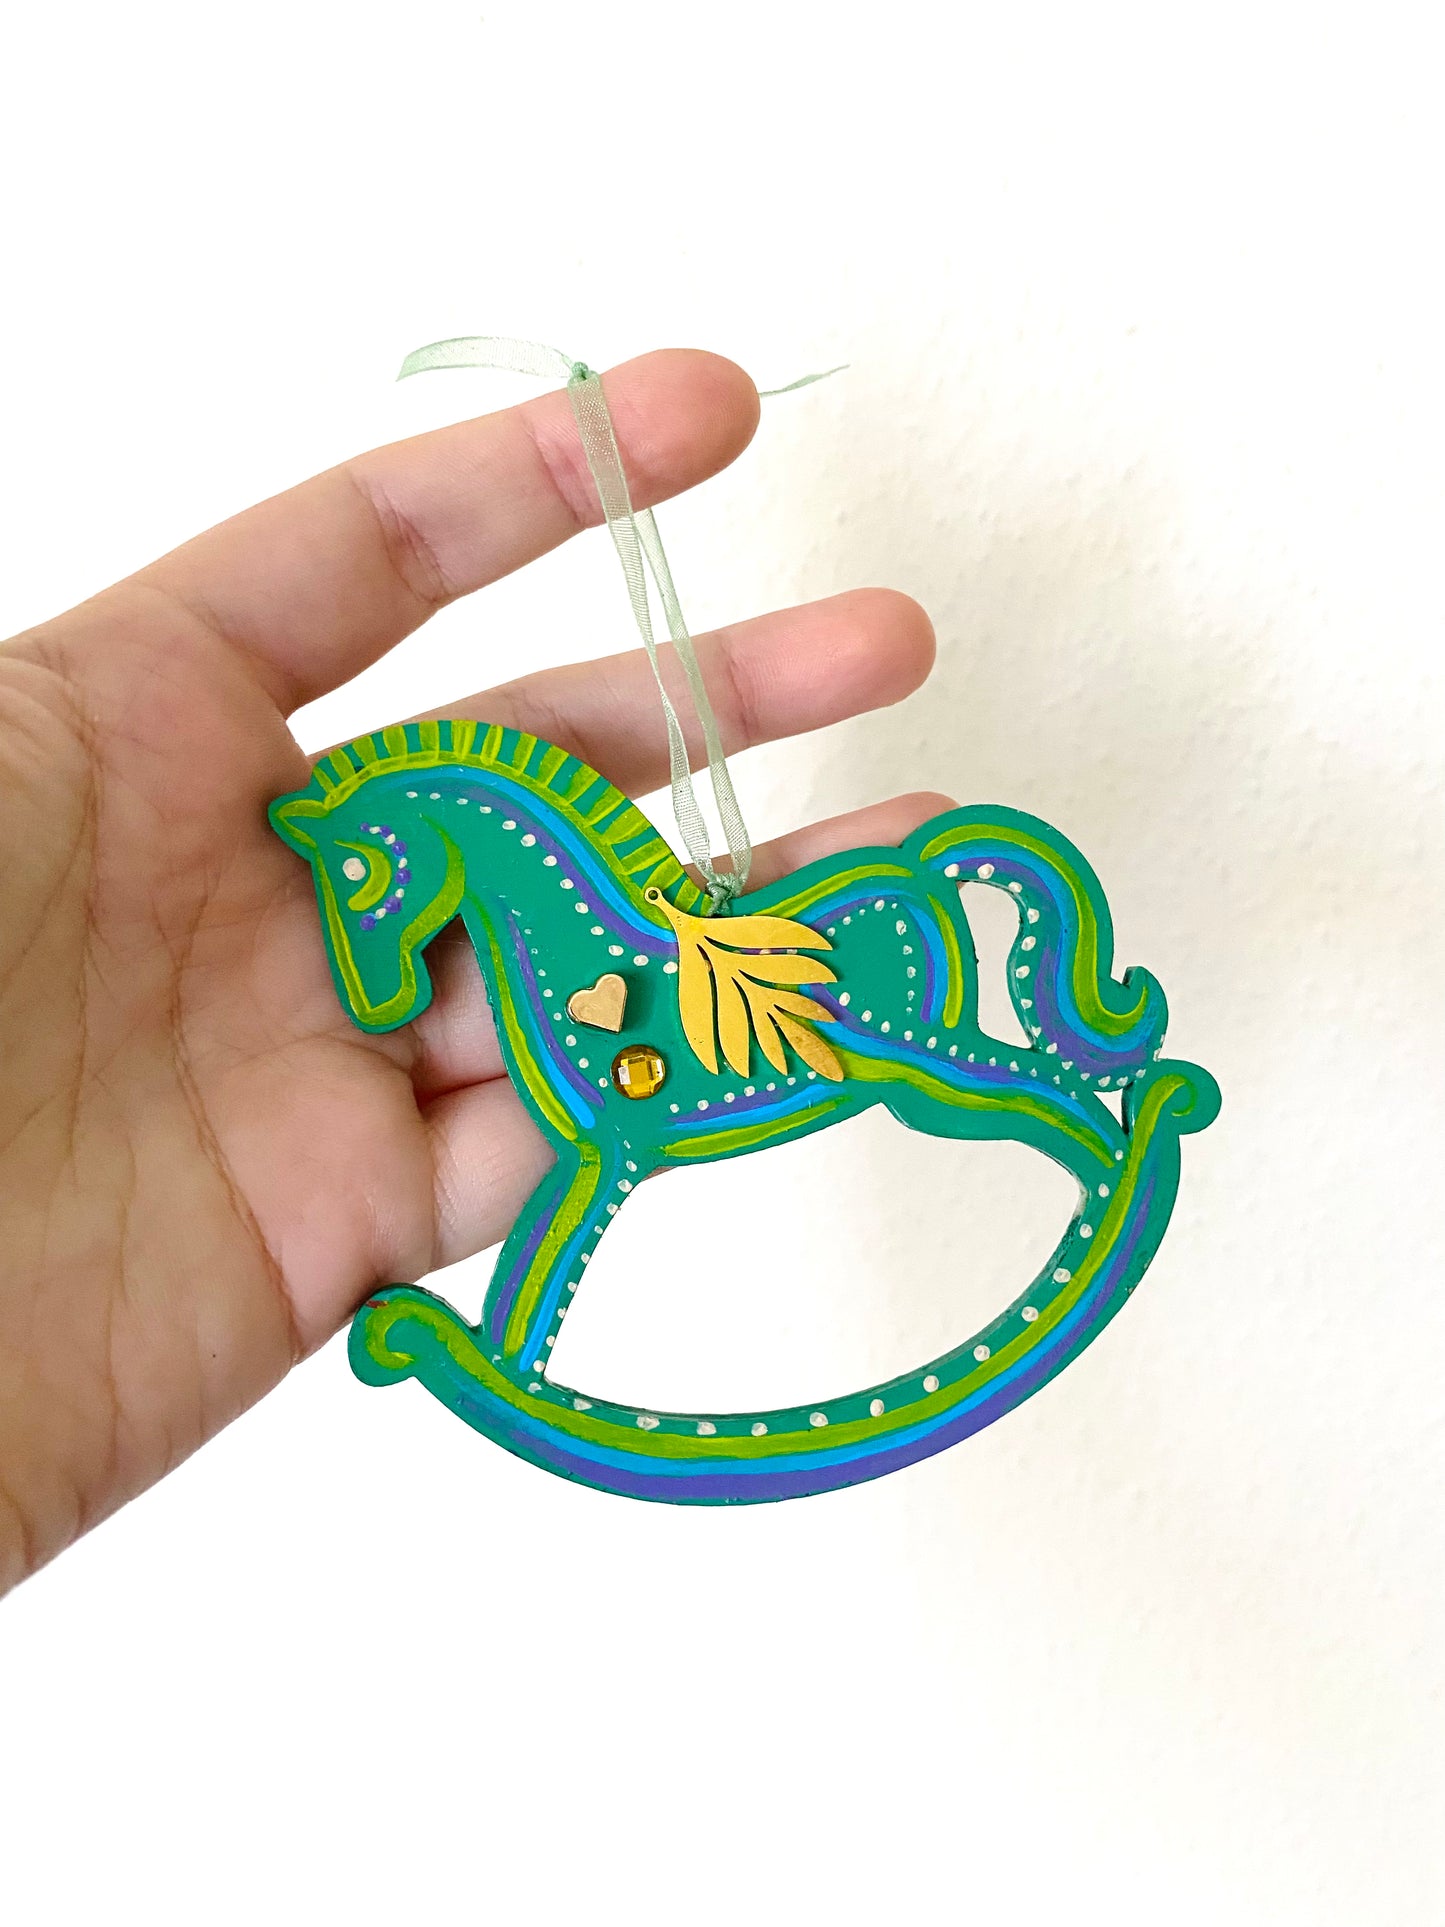 Hand-painted rocking horse ornament / Kézzel festett hintaló dísz